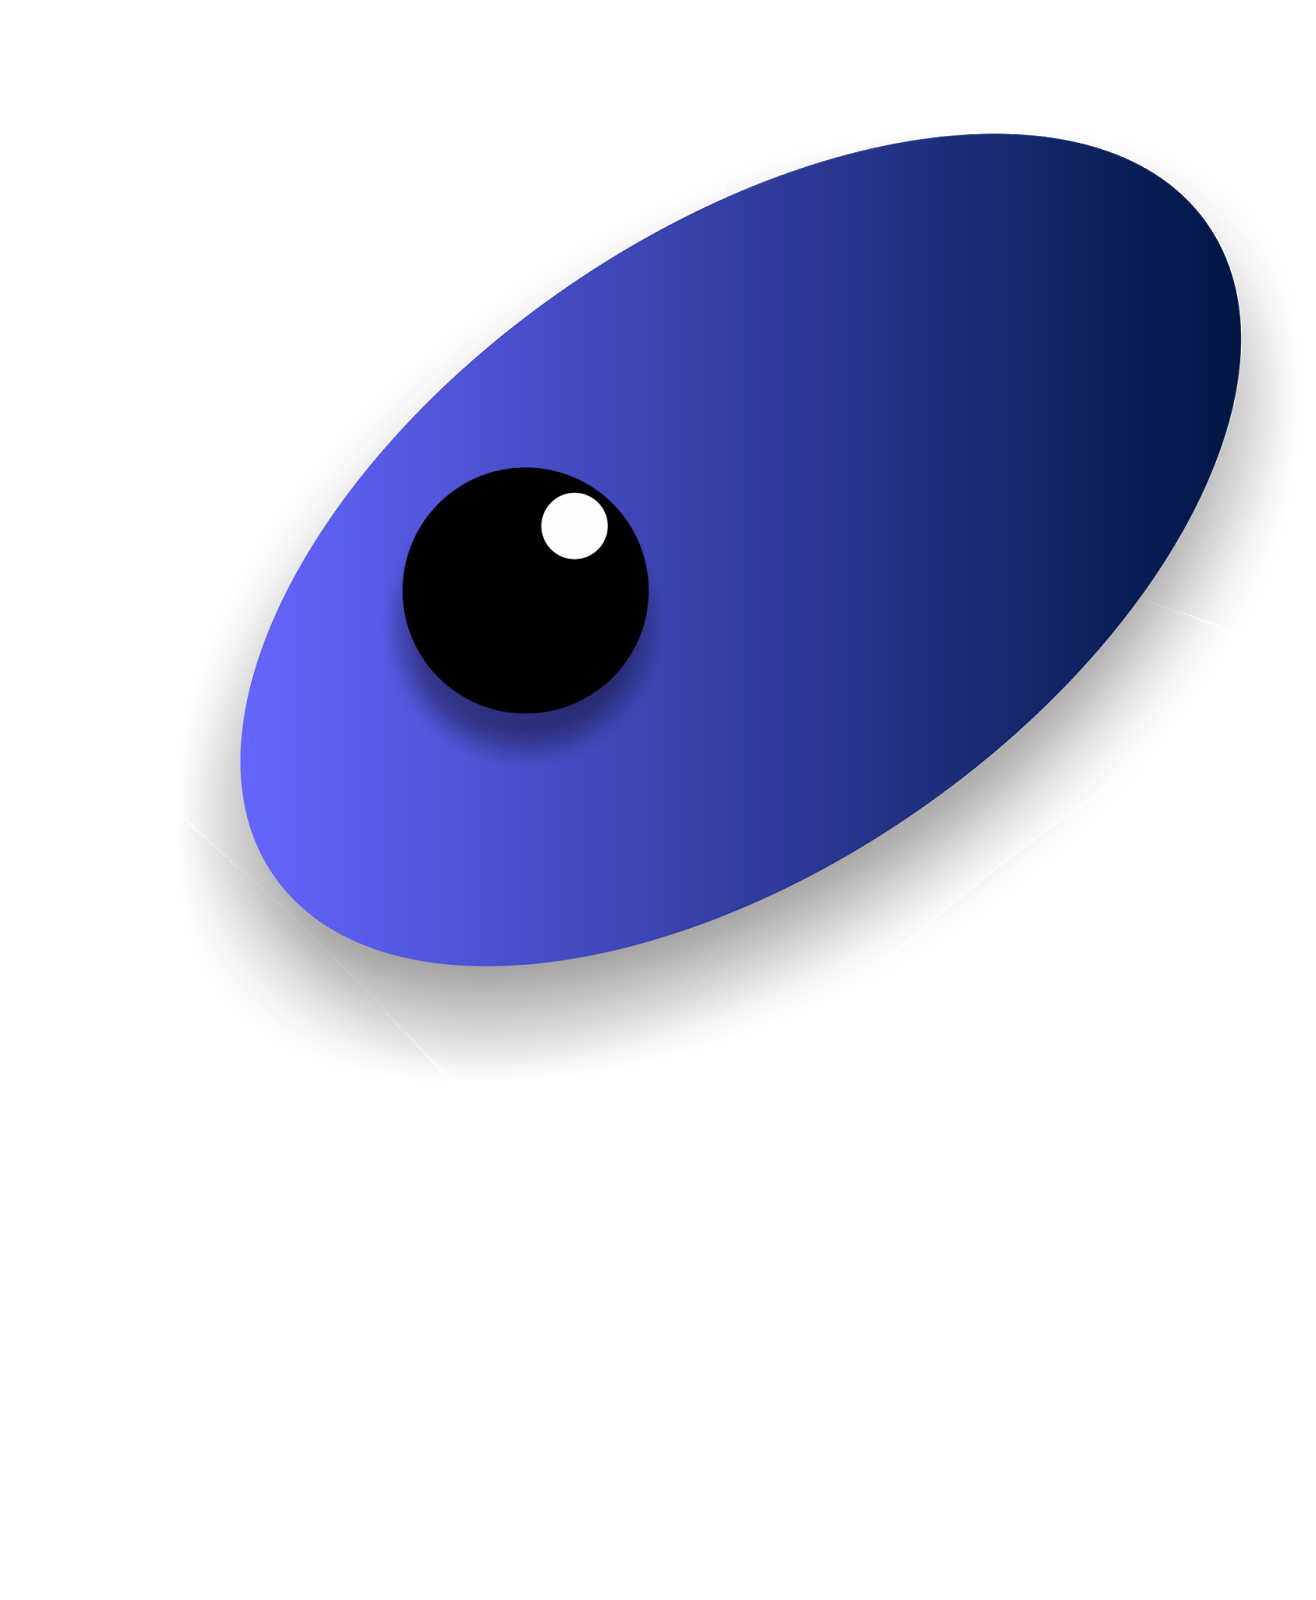 Eye Catcher Graphik Design